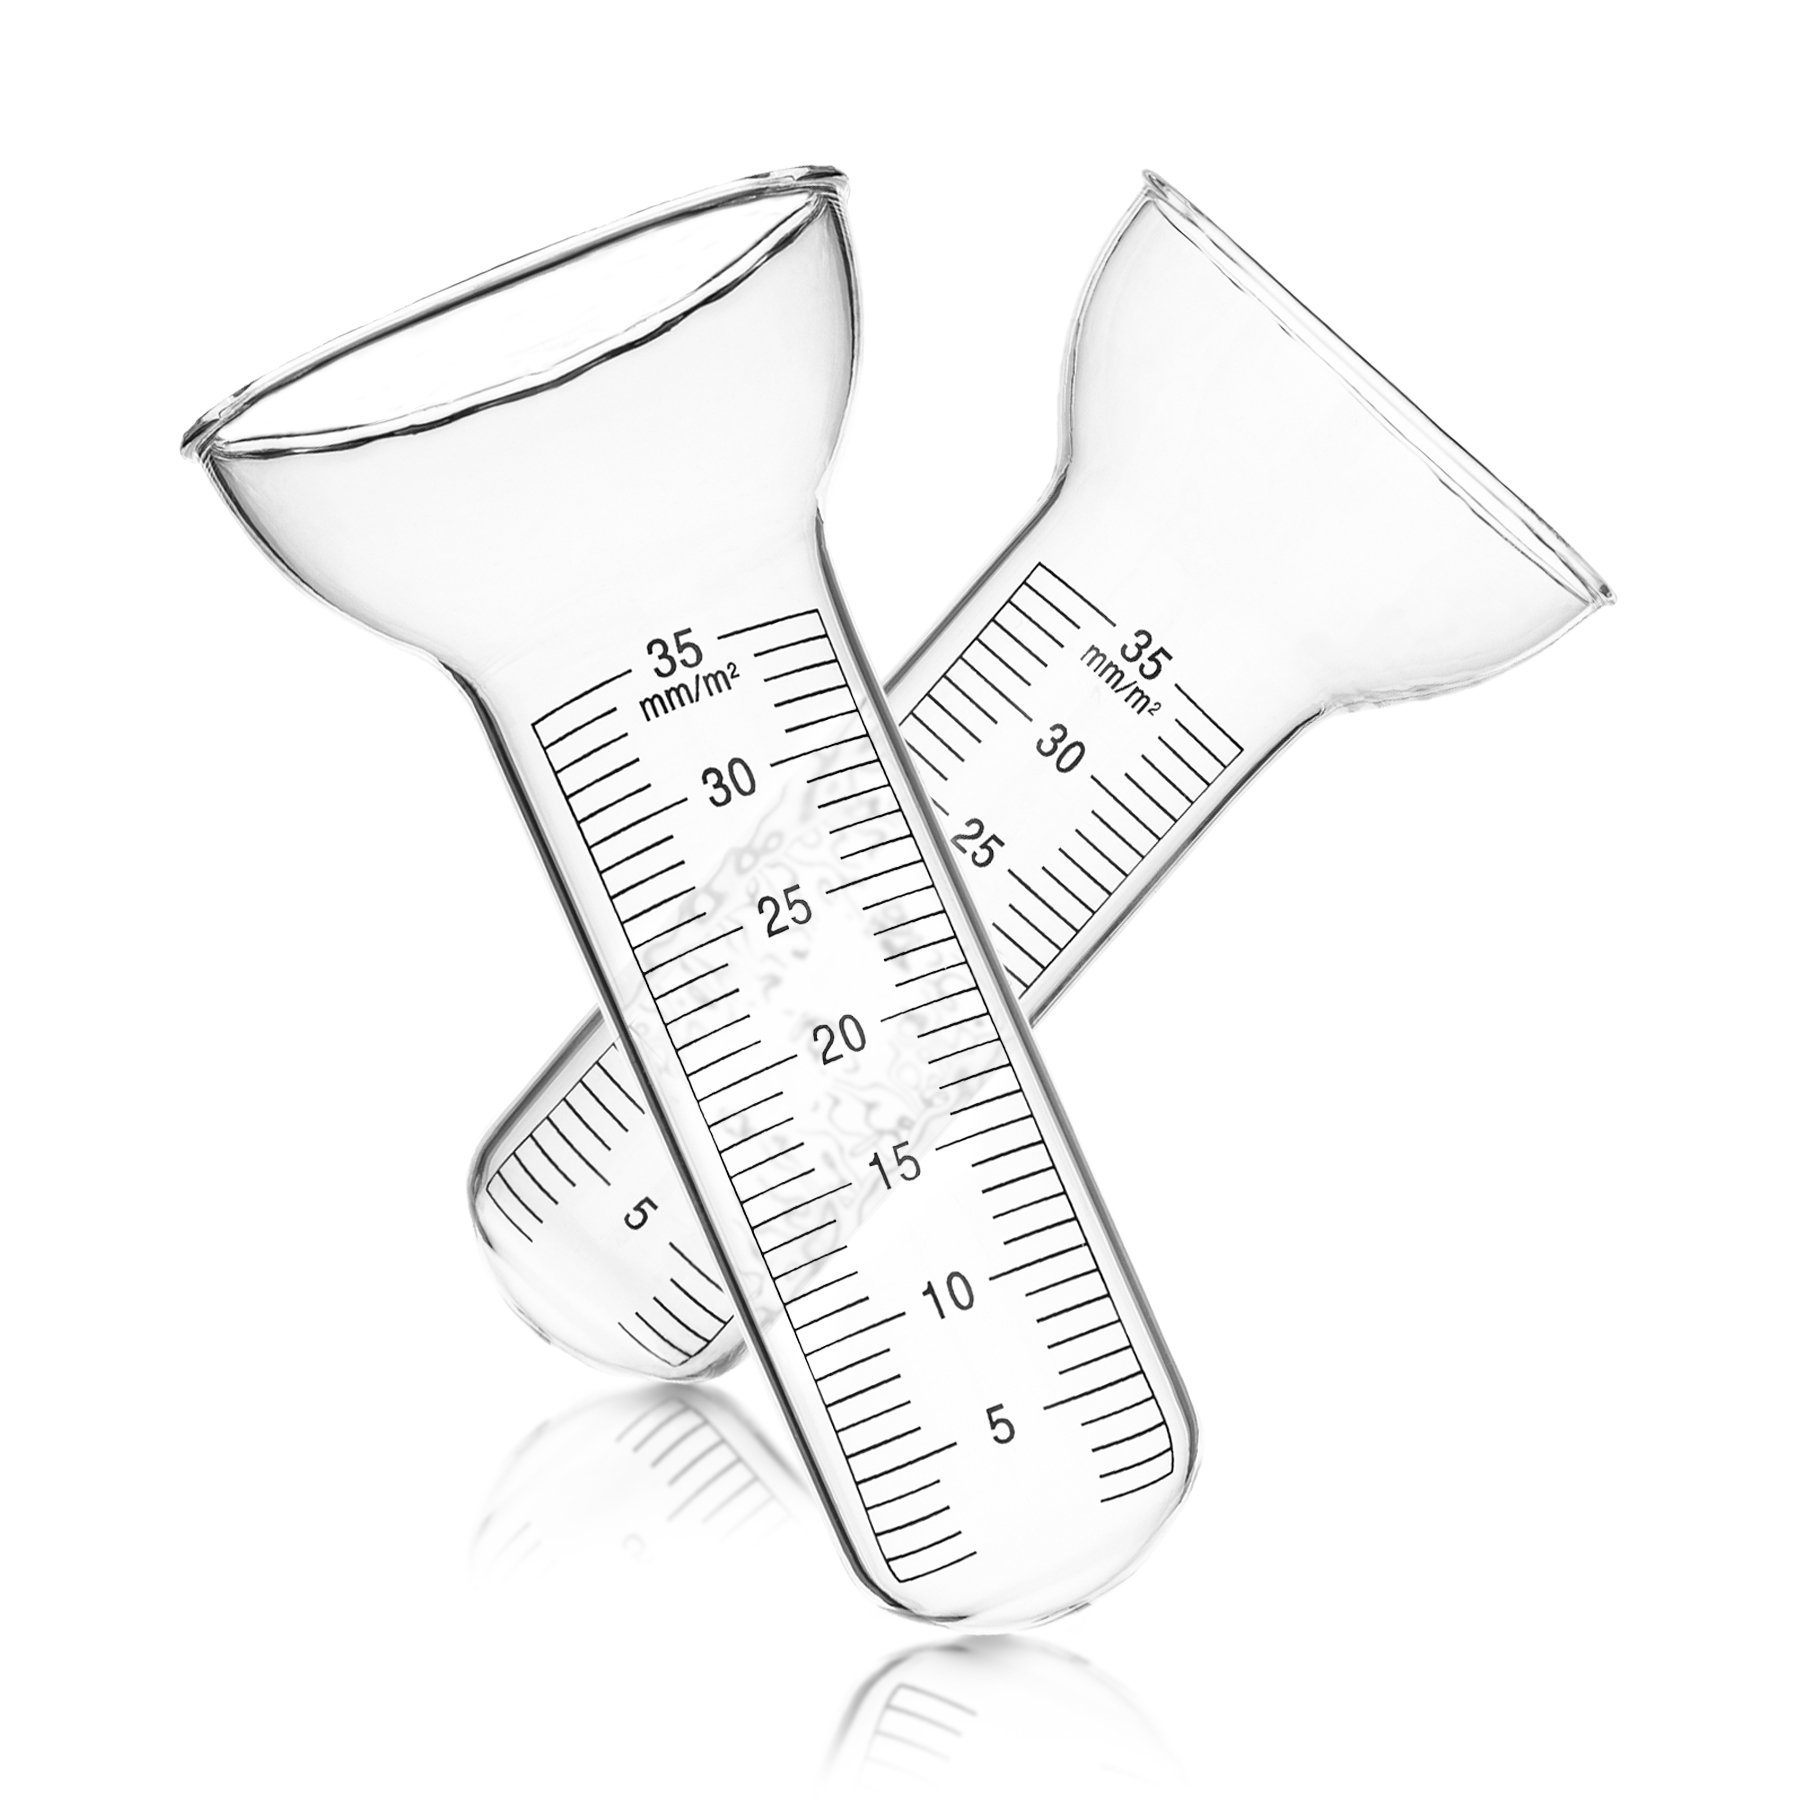 abzulesen Für Glas Niederschlagsmesser Einfach Regenmesser mm Messungen BigDean aus 1-35